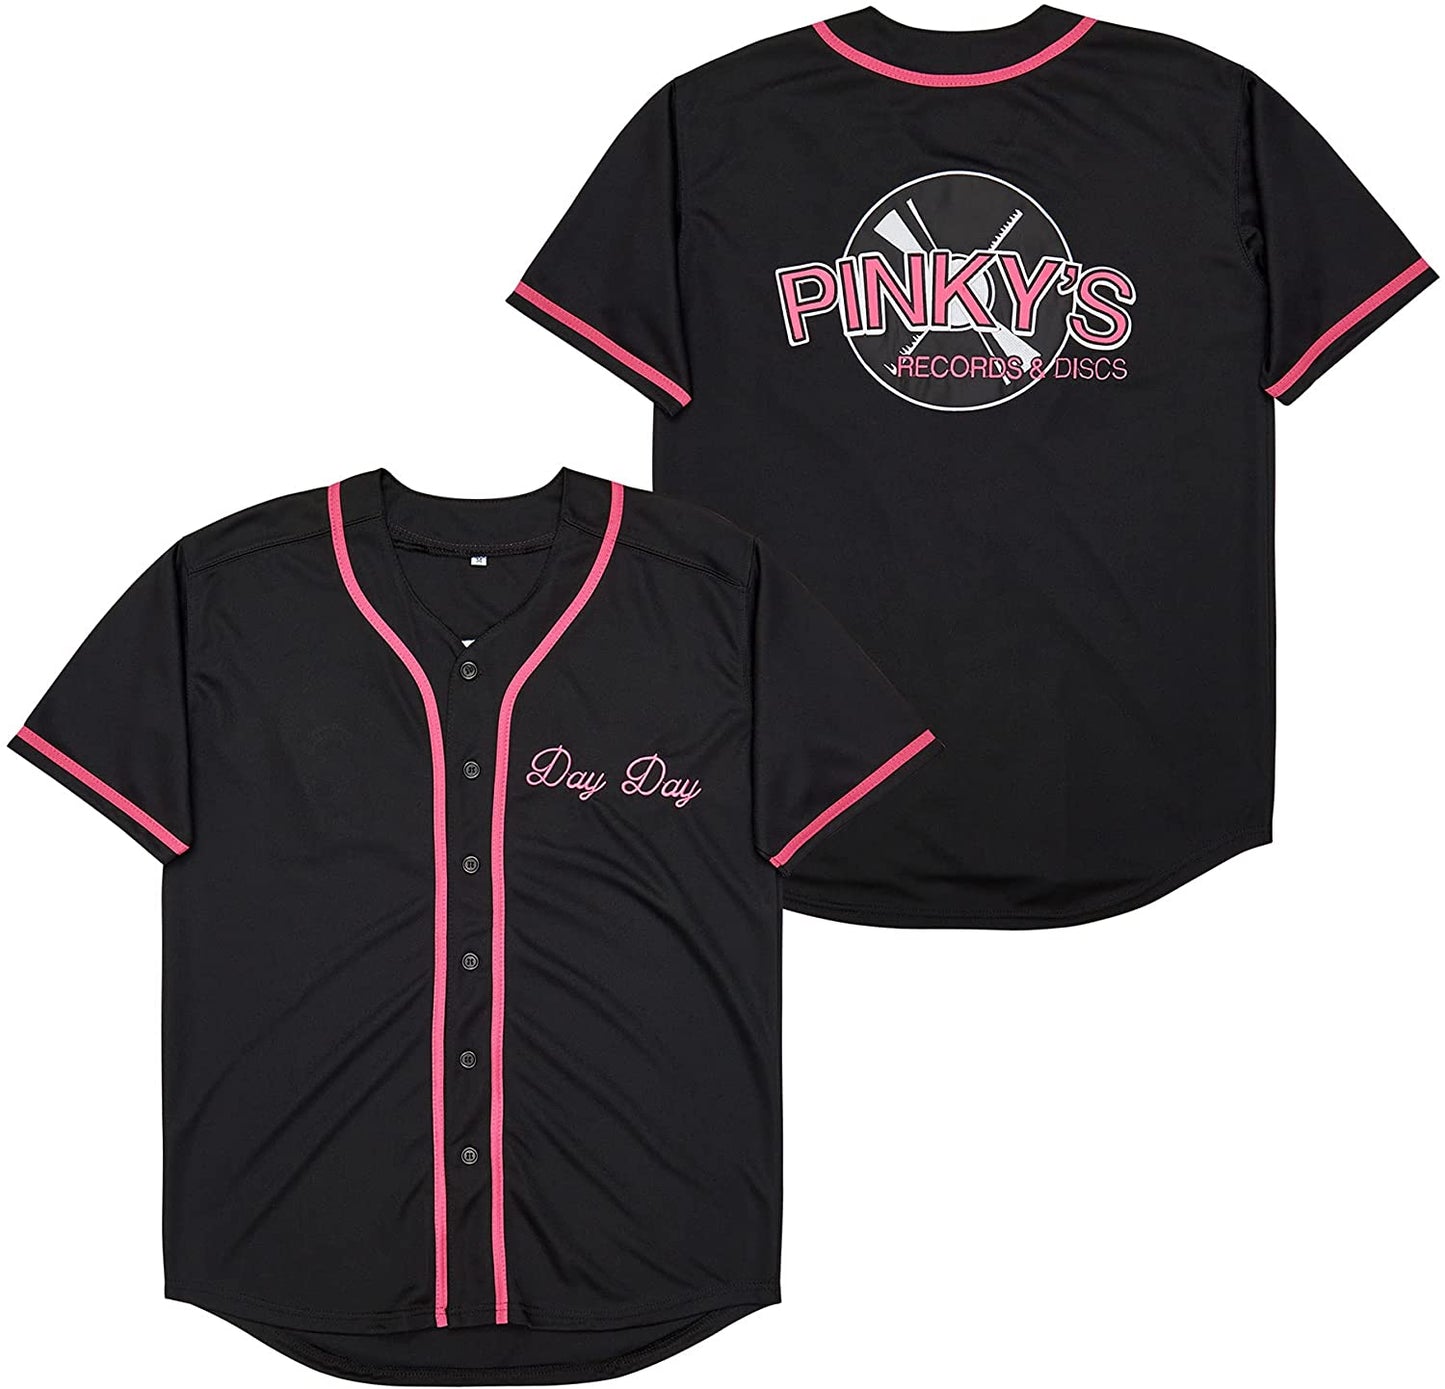 Next Friday Pinky's Record Movie 90s Baseball Jersey